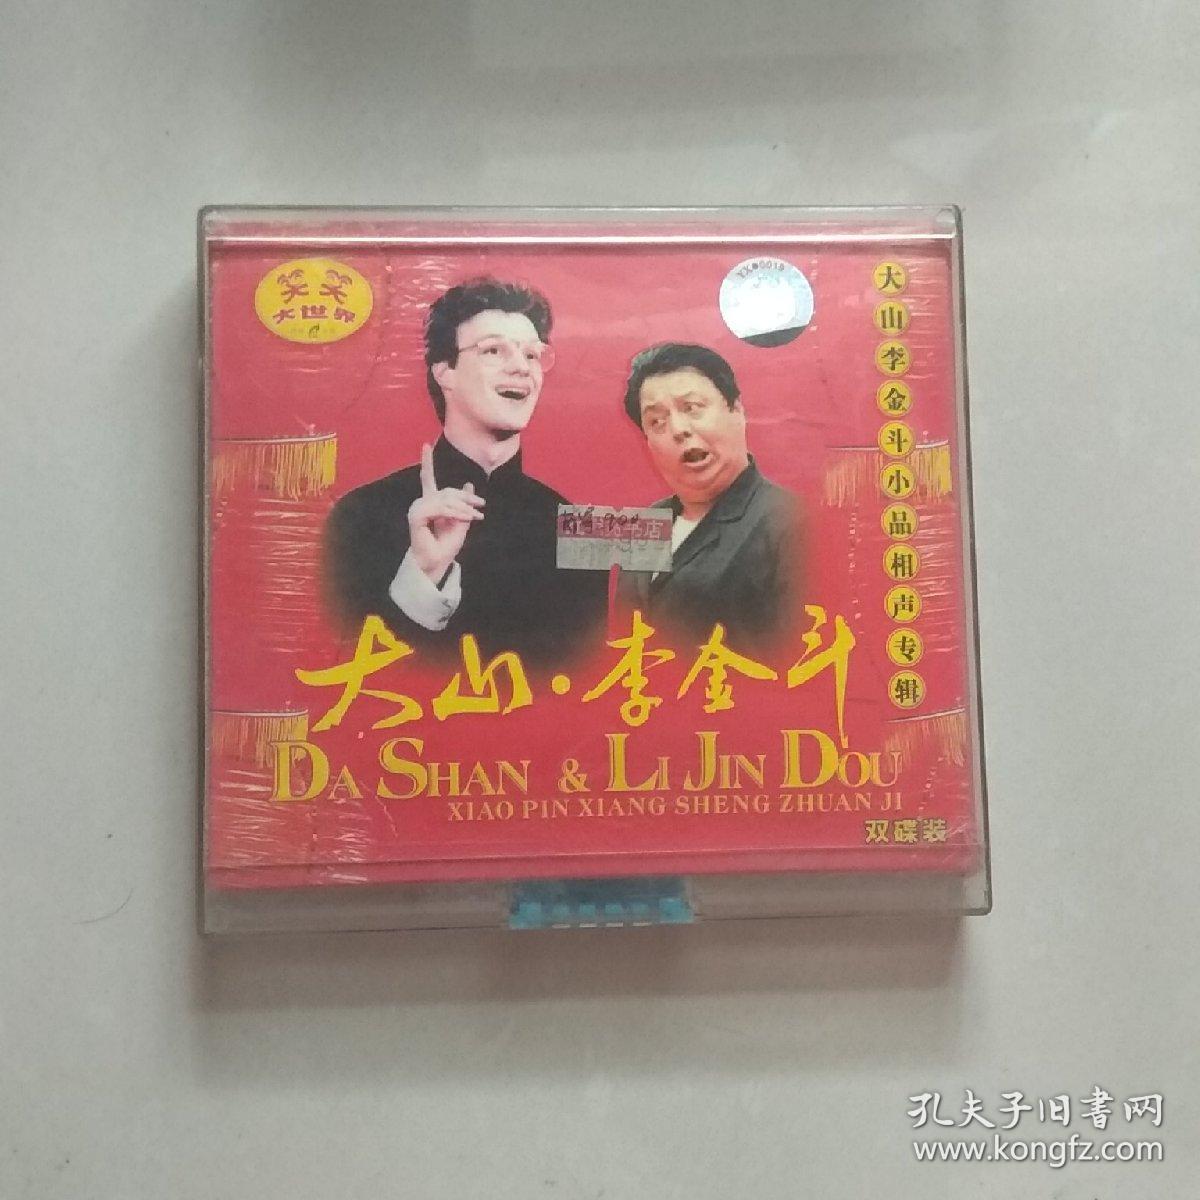 VCD,笑笑大世界大山李金斗小品相声专辑双碟